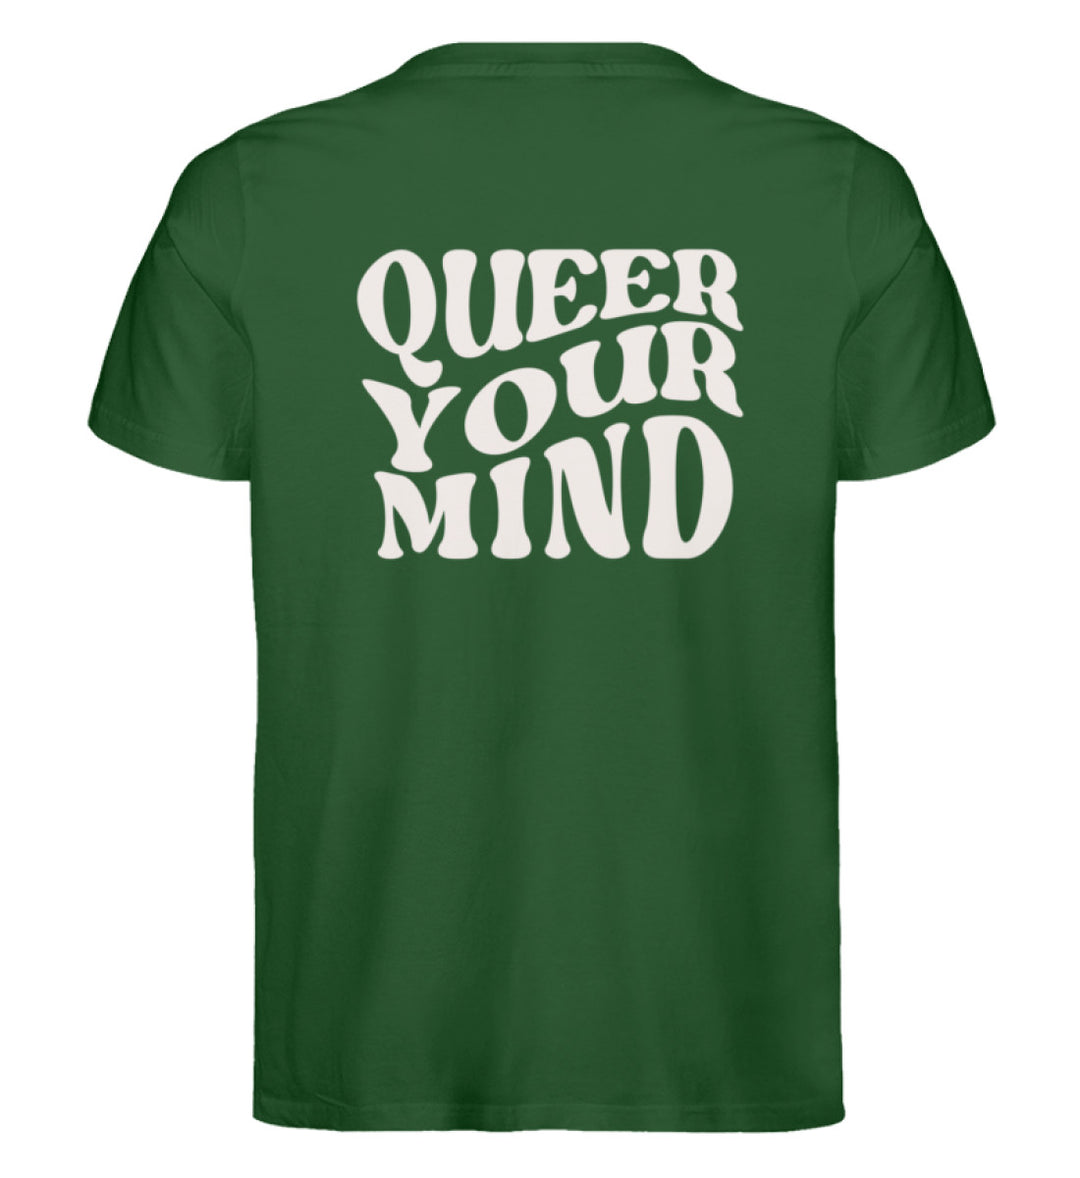 grünes Shirt mit cremefarbener Aufschrift queer your mind auf dem Rücken